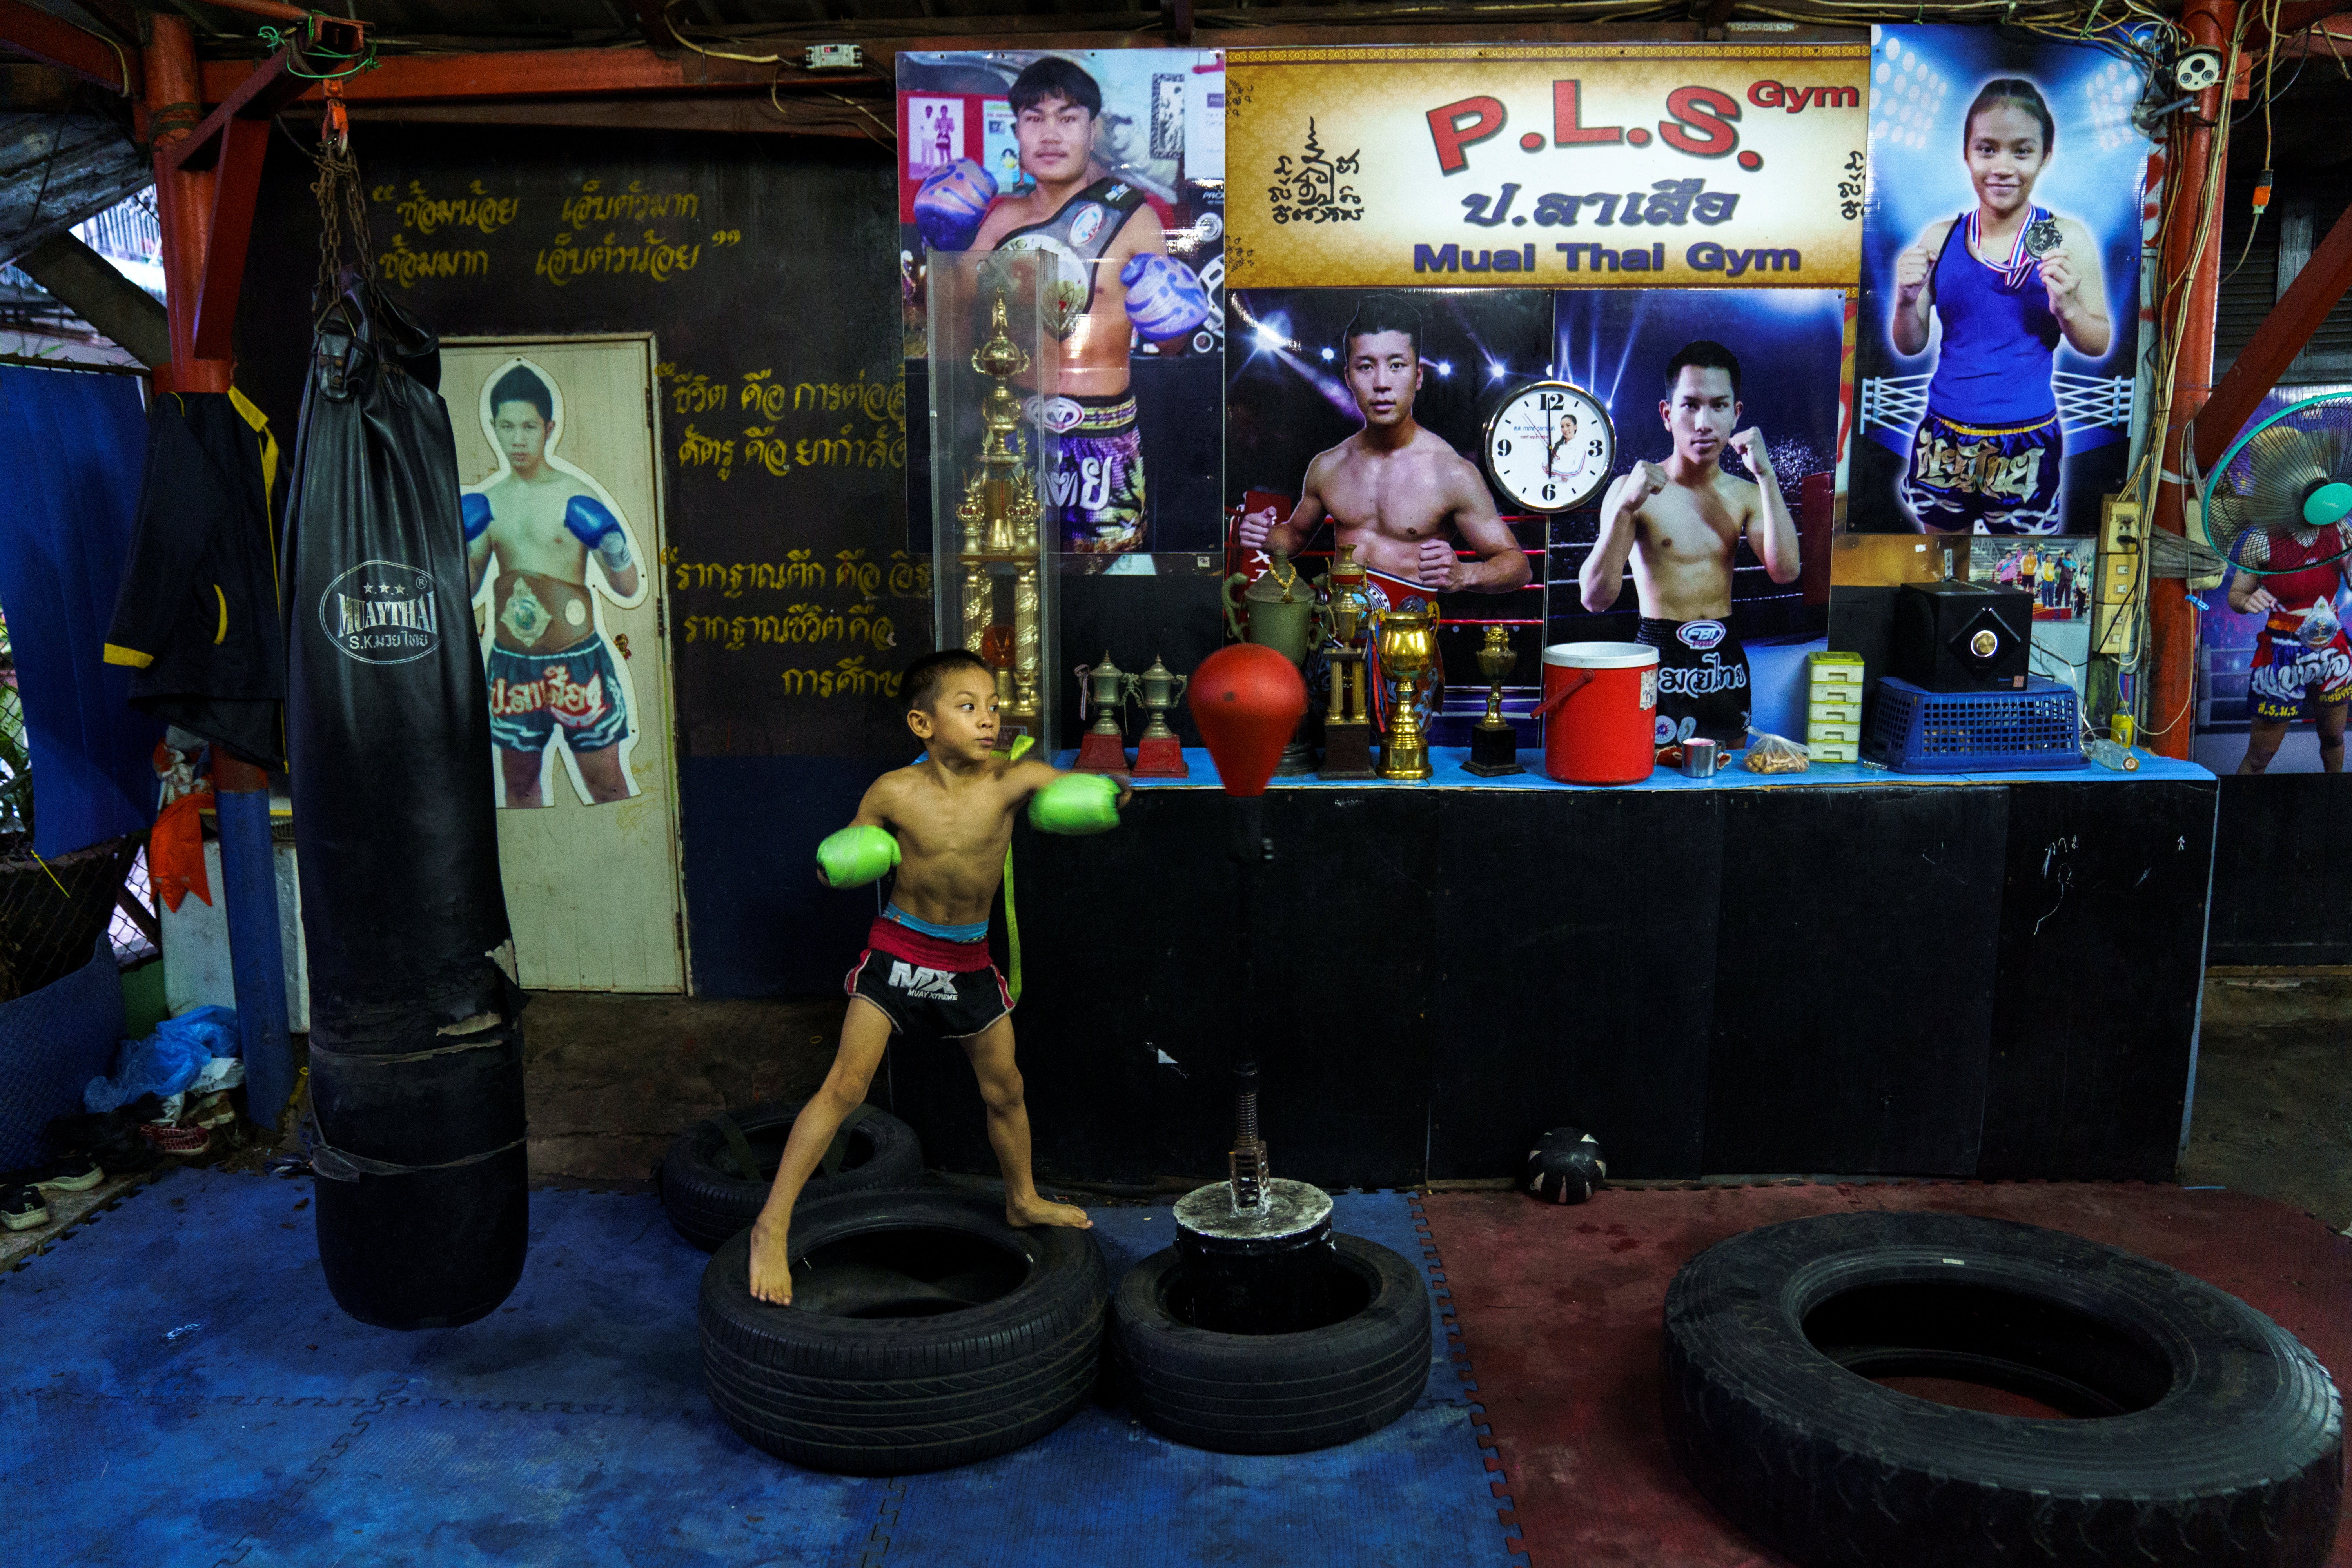 Pornpattara Peachurai, known as Tata Por Lasua in the ring, trains at a gym in Bangkok